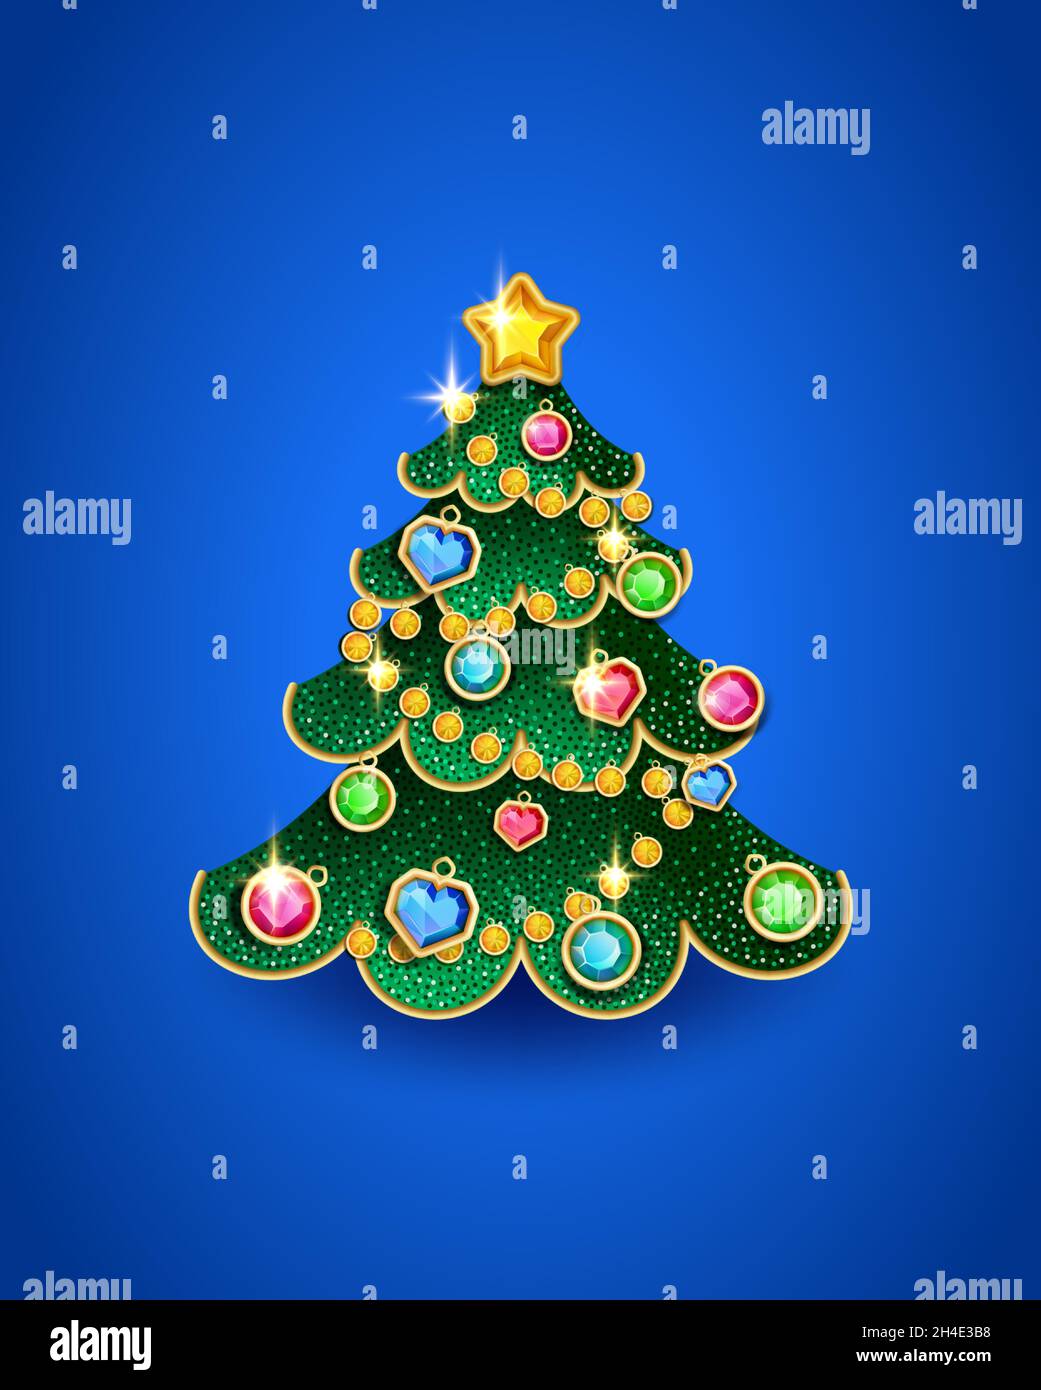 Weihnachtsbaum in Form eines Weihnachtsbaum Spielzeug mit Edelsteinen verziert, Vektor-Illustration Stock Vektor